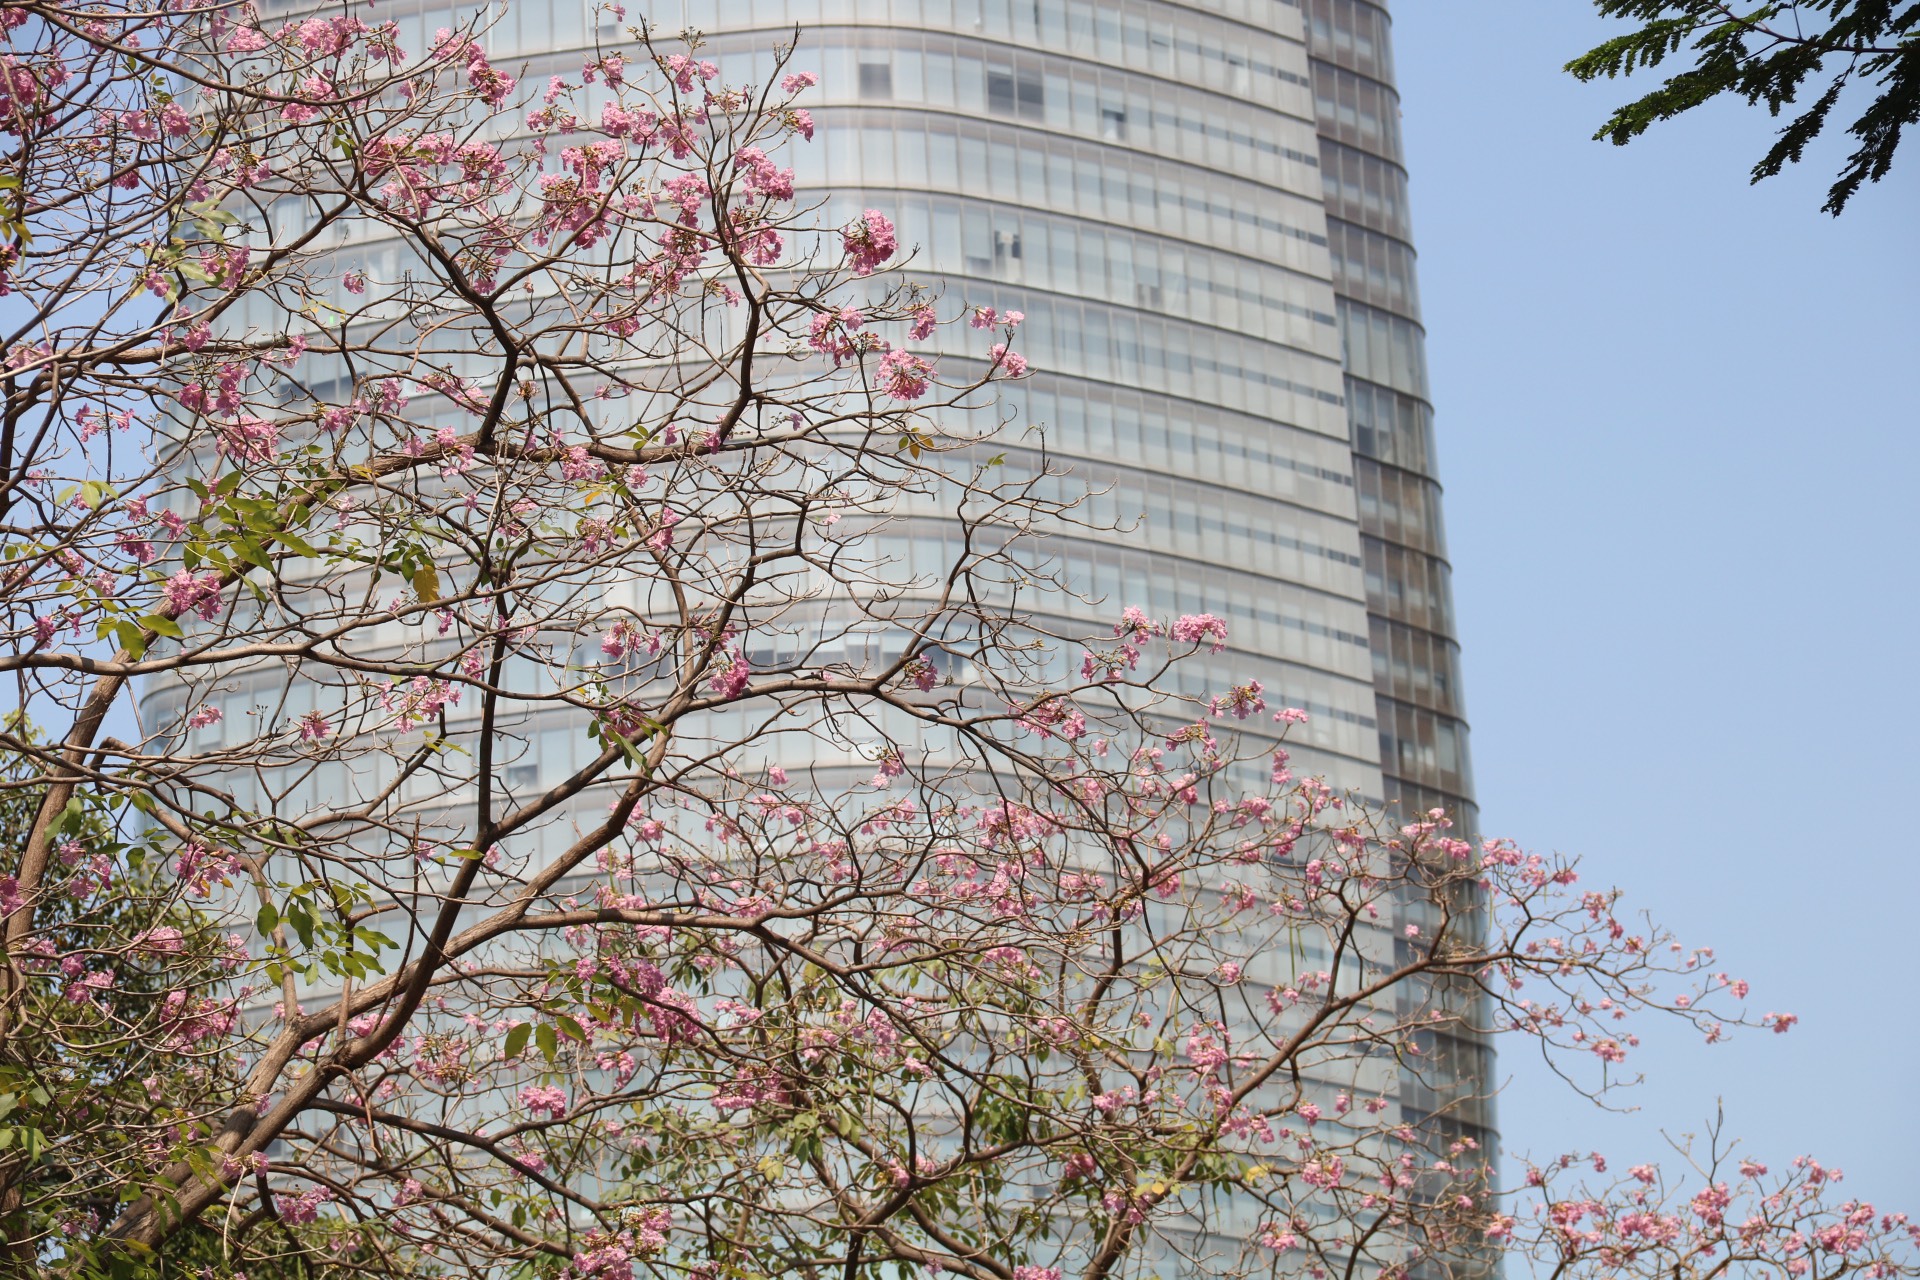 Hoa kèn hồng bung nở rực rỡ trong nắng Sài Gòn